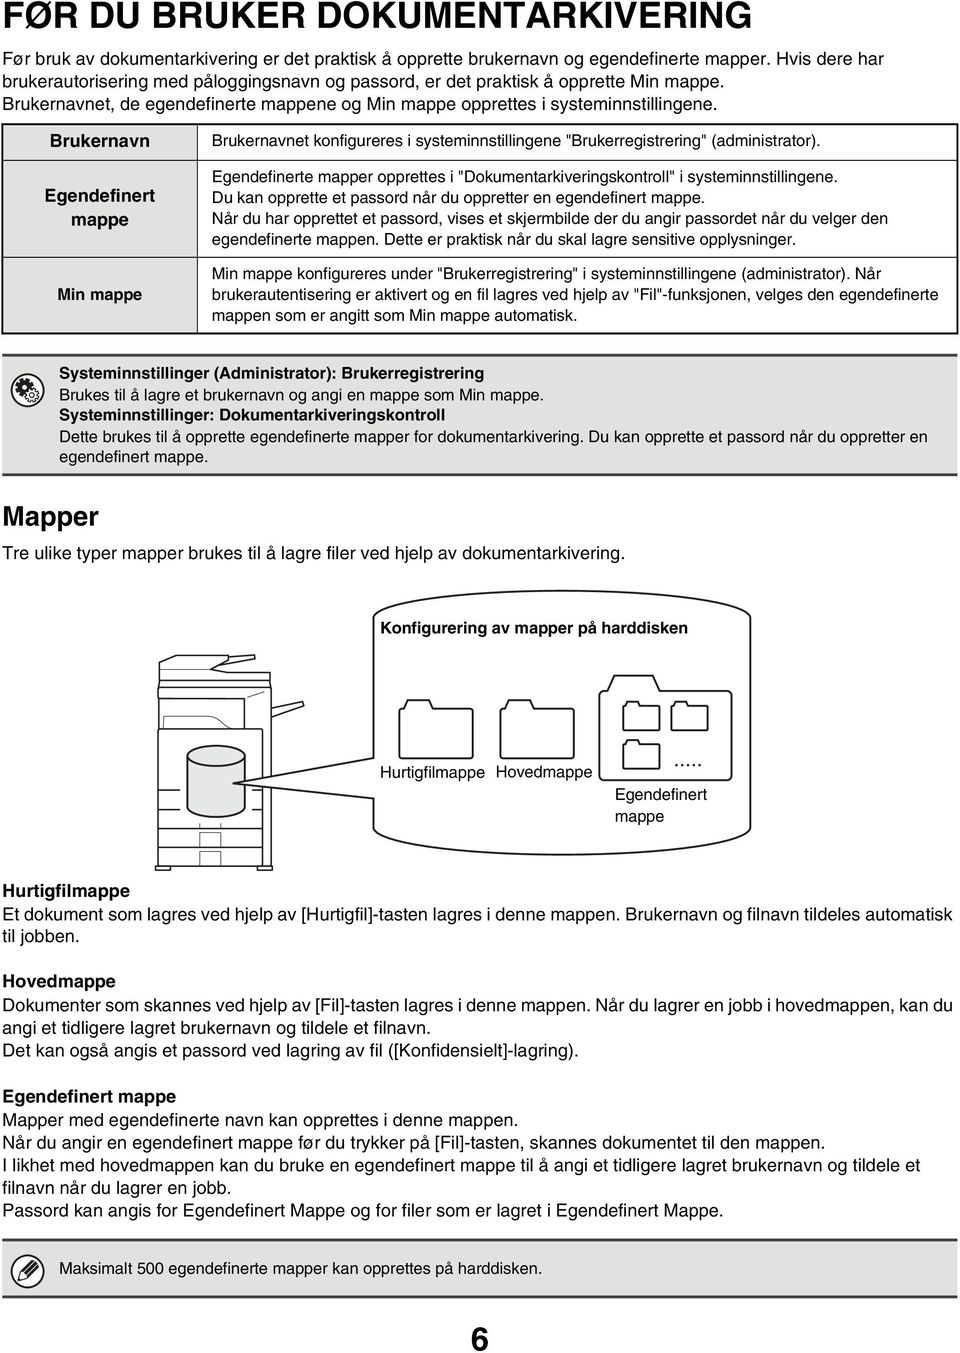 Brukernavn Egendefinert mappe Min mappe Brukernavnet konfigureres i systeminnstillingene "Brukerregistrering" (administrator).